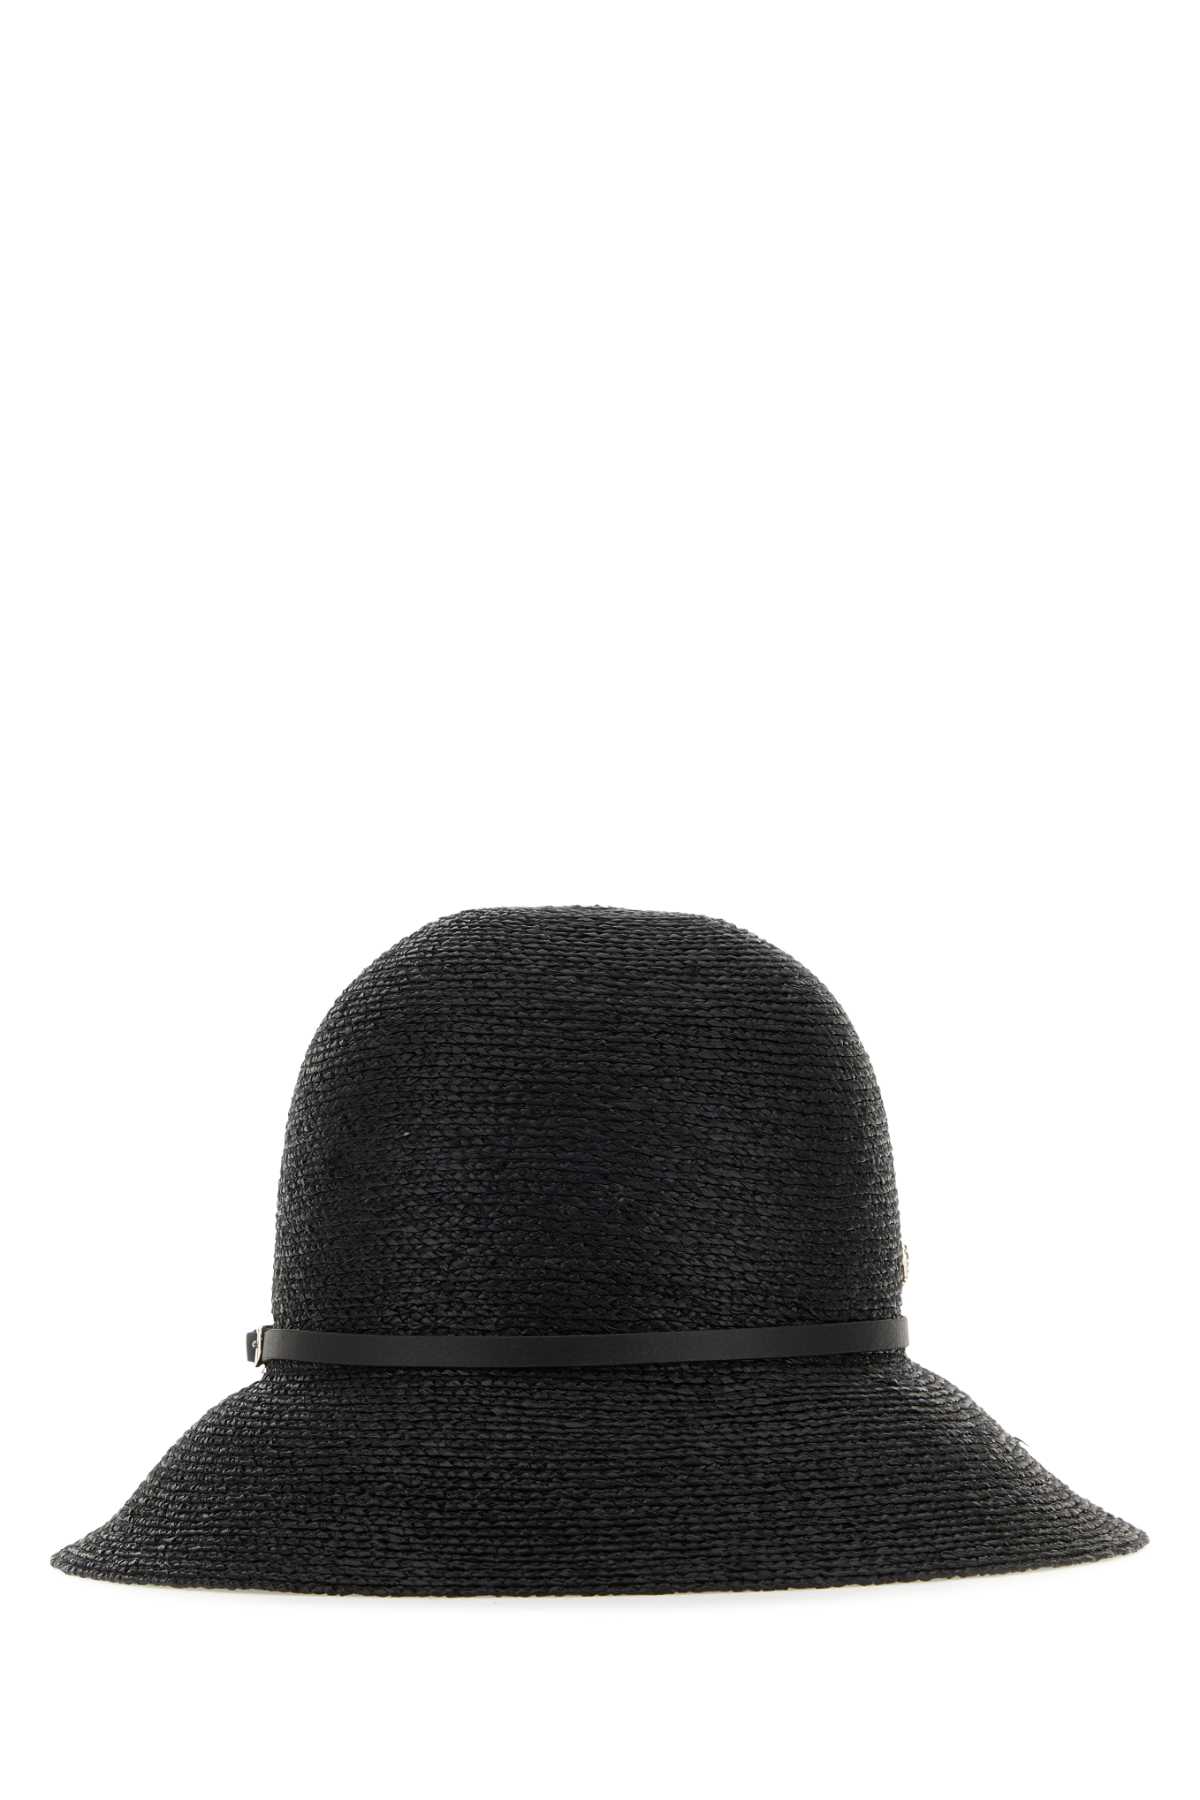 Black Raffia Hat